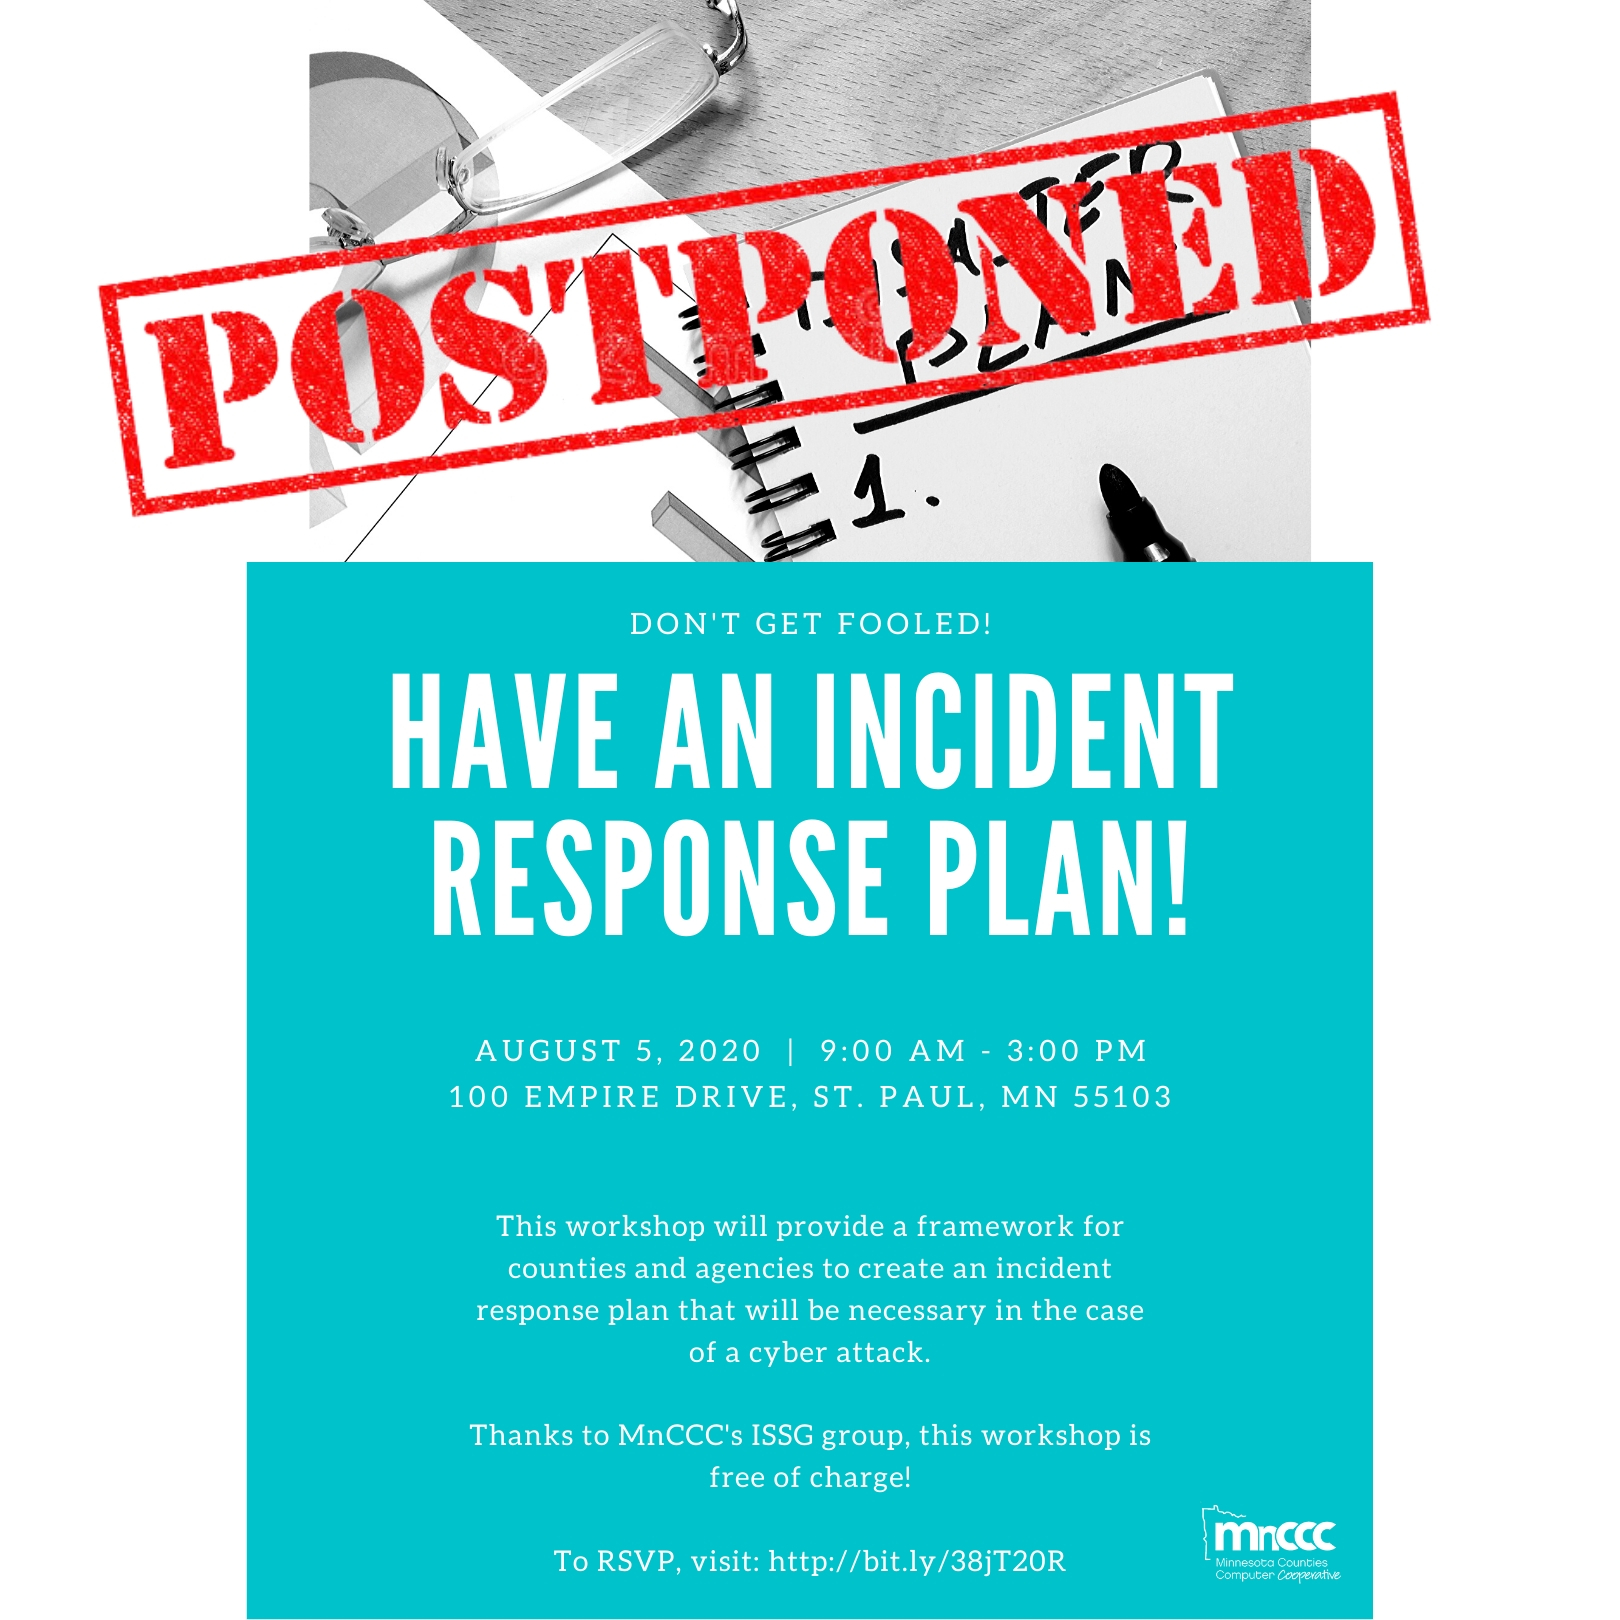 Incident Response Planning workshop event flyer